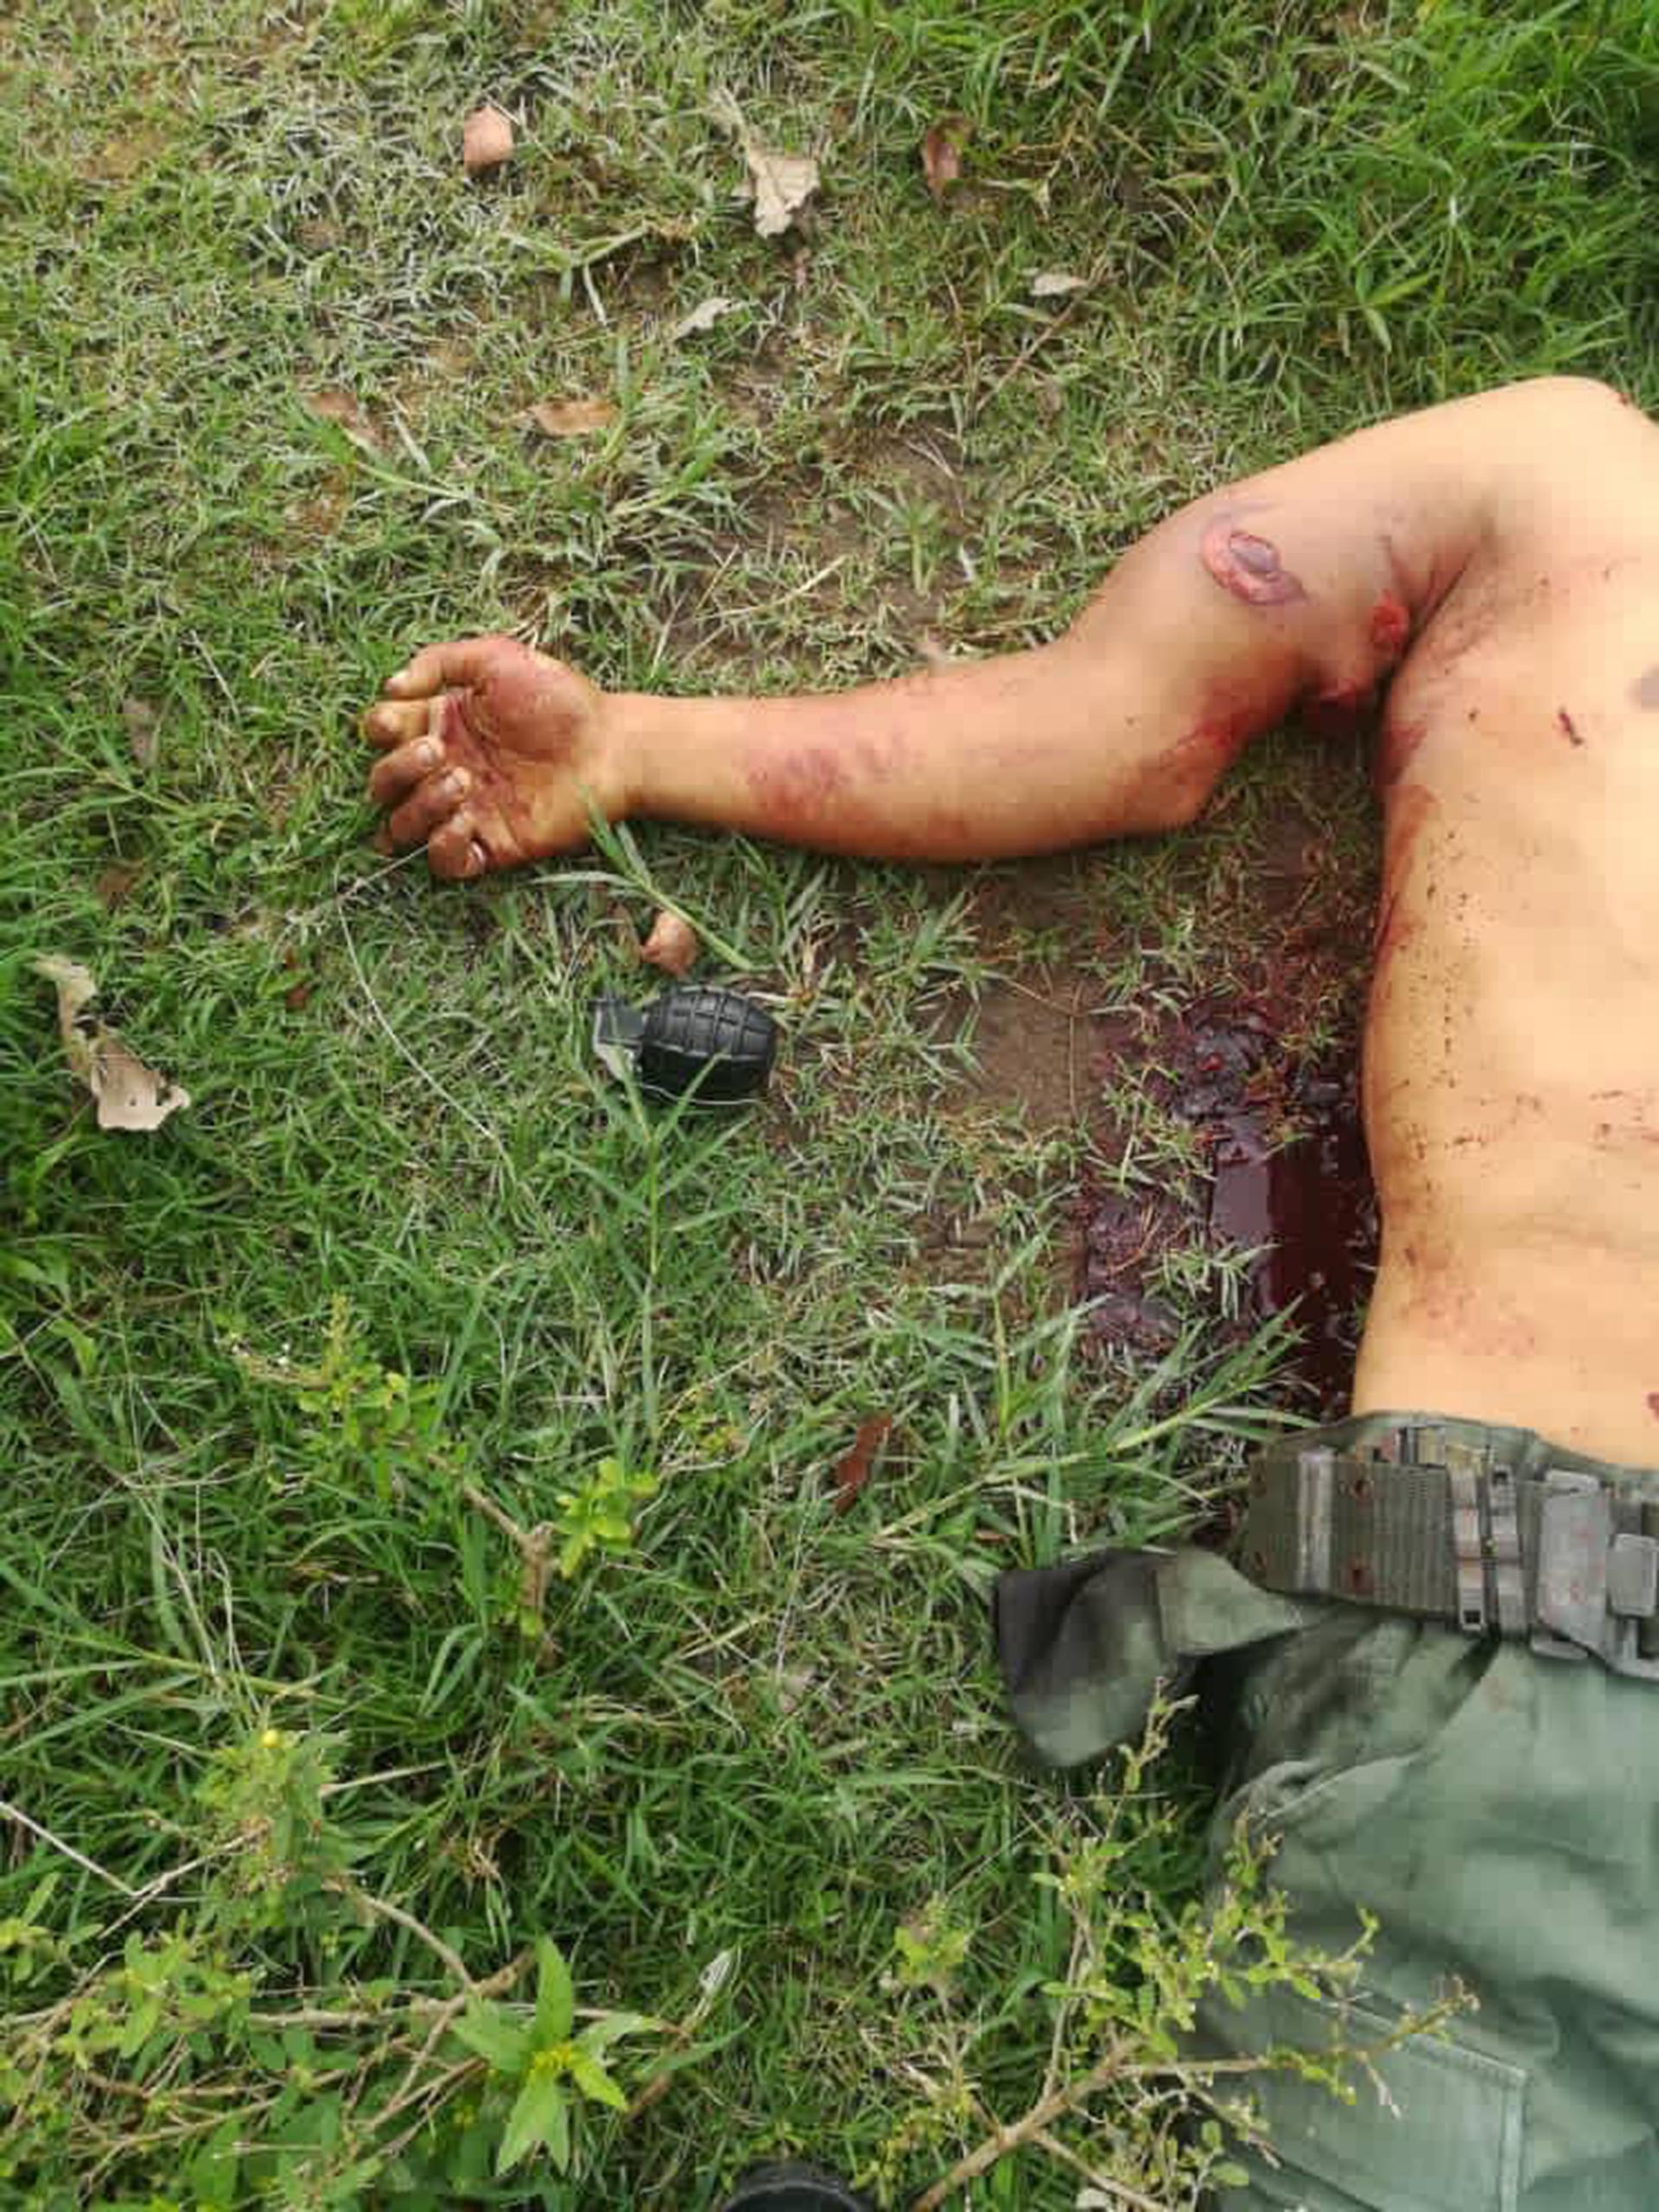 El cuerpo de un hombre con una granada a su lado (@bgalindo74)